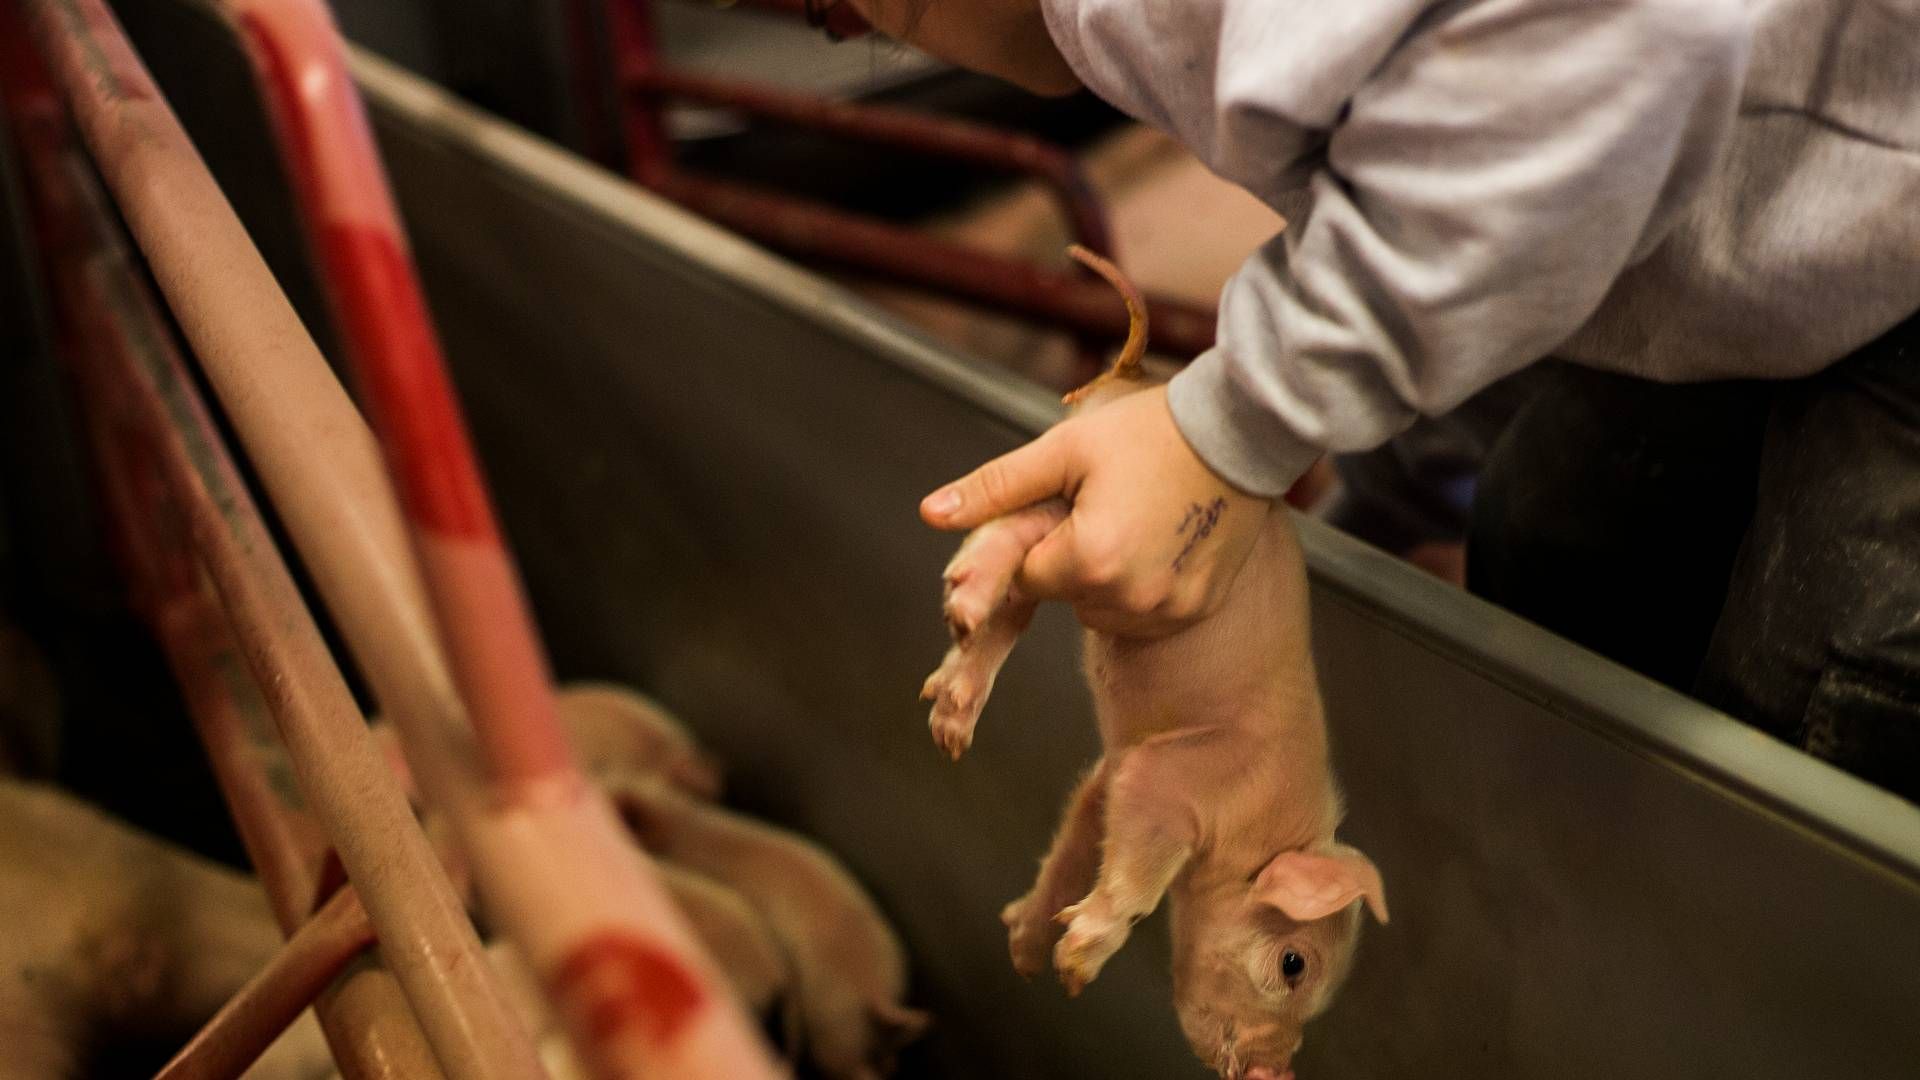 Ca. 95 pct. af de grise, der når til slagterierne i Danmark, har fået kuperet halen, oplyser Fødevarestyrelsen. | Foto: Simon Fals/Politiken/Ritzau Scanpix